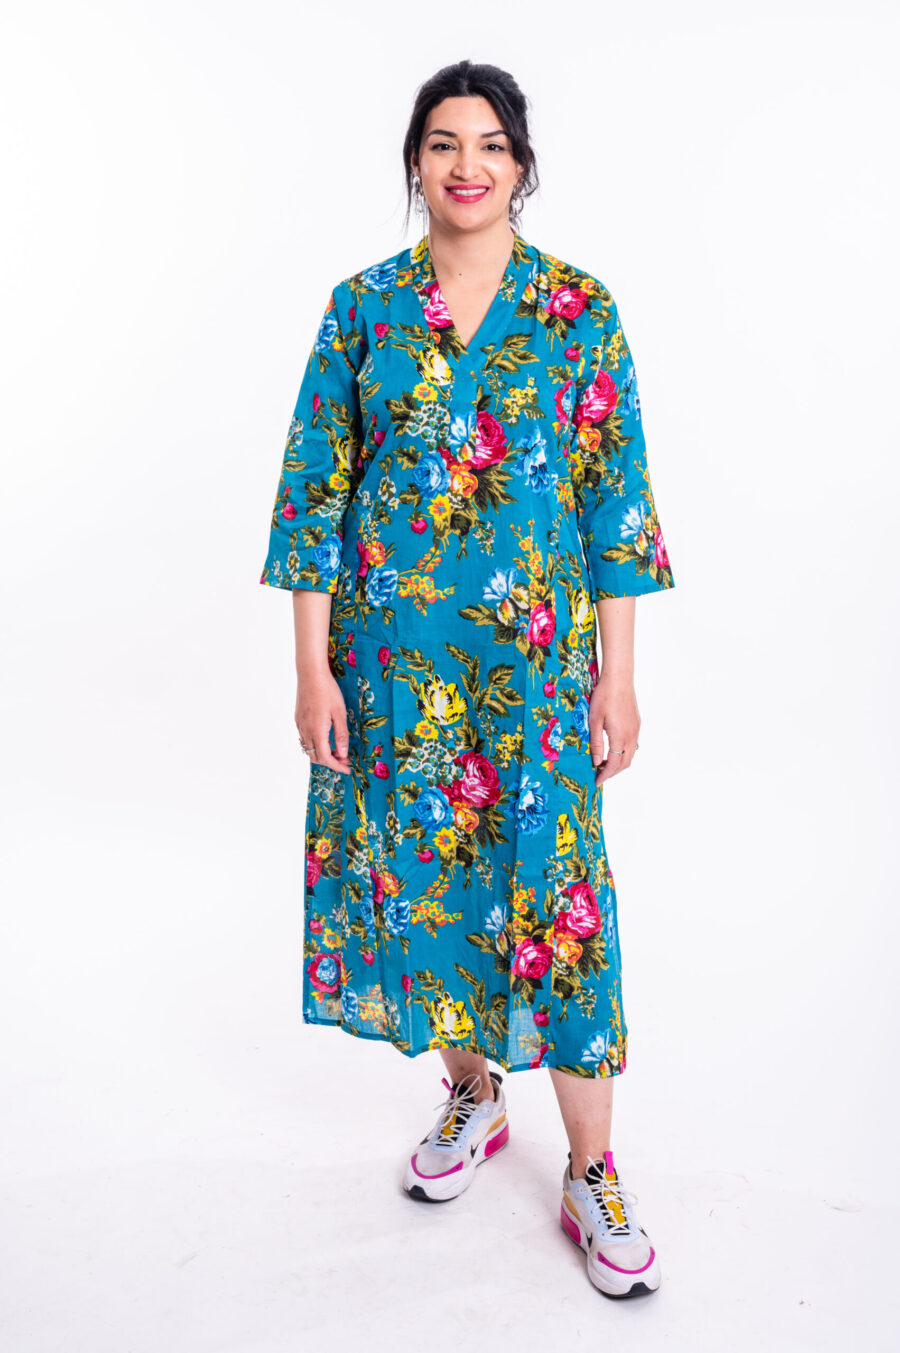 גלביה לנשים | גלבייה בעיצוב ייחודי - שמלה טורקיז עם הדפס פרחים צבעוני